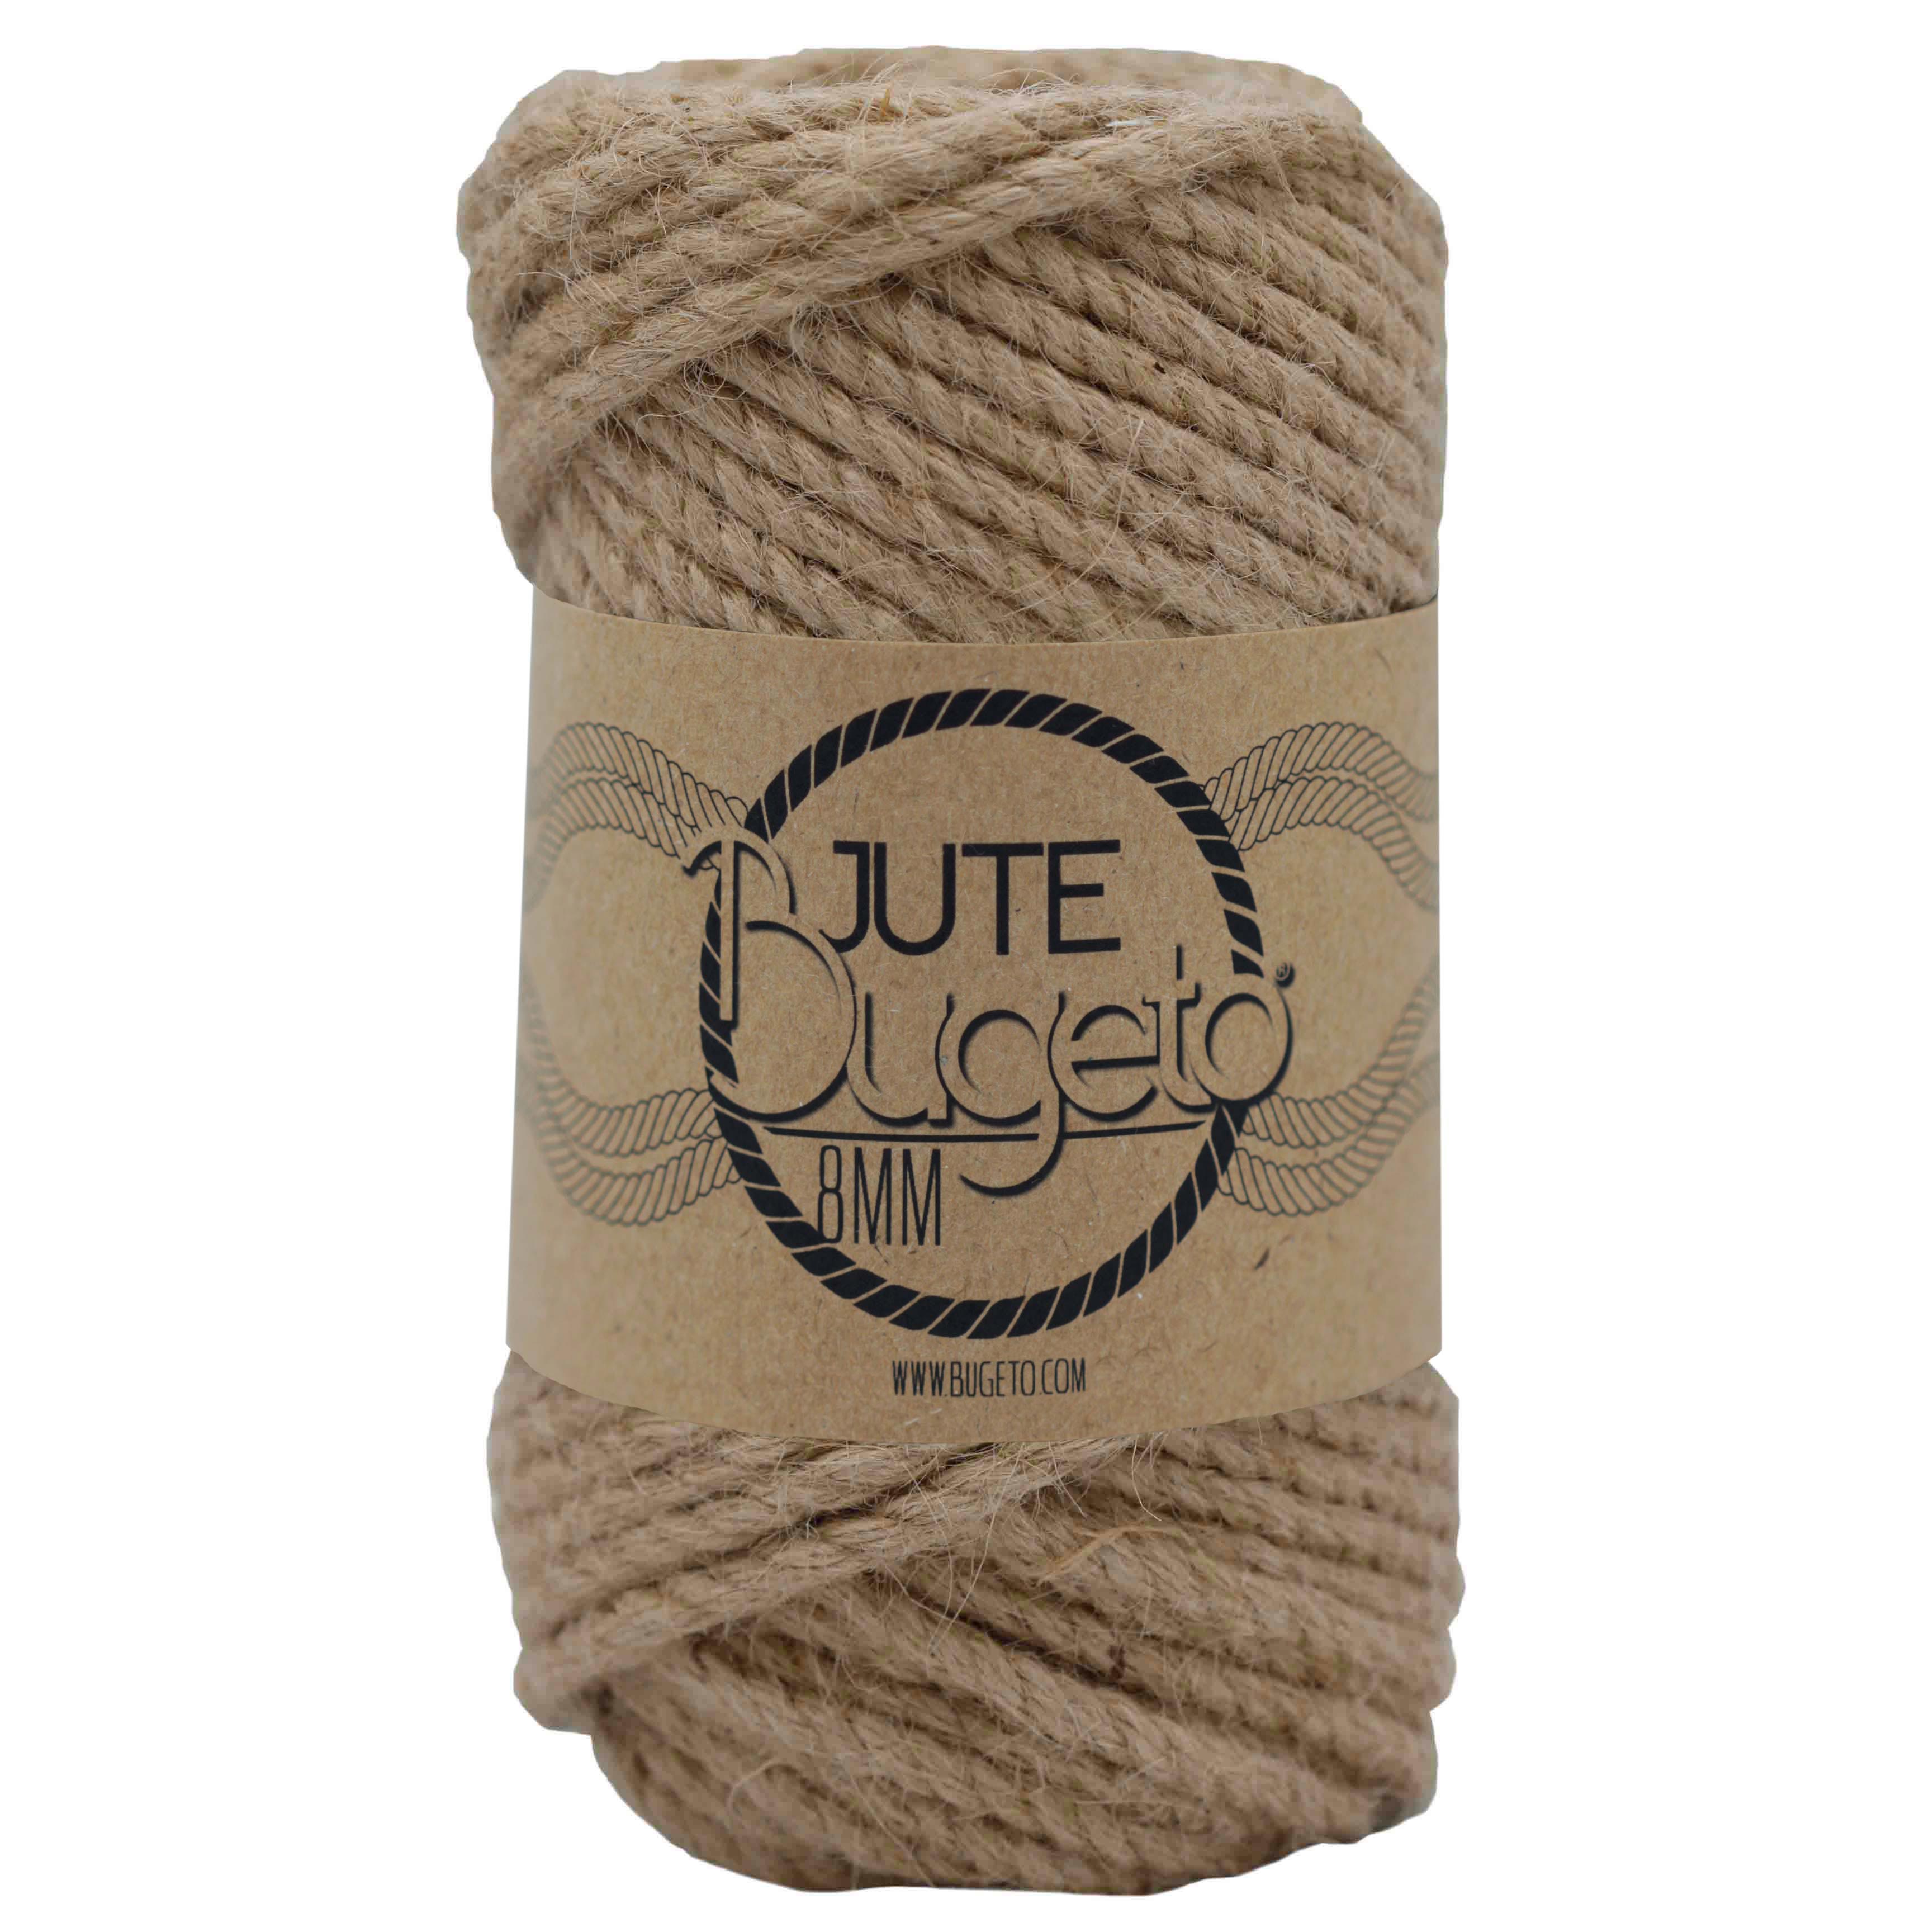 jute yarns india yarn undyed natural yarn jüt yarn bugeto yarn